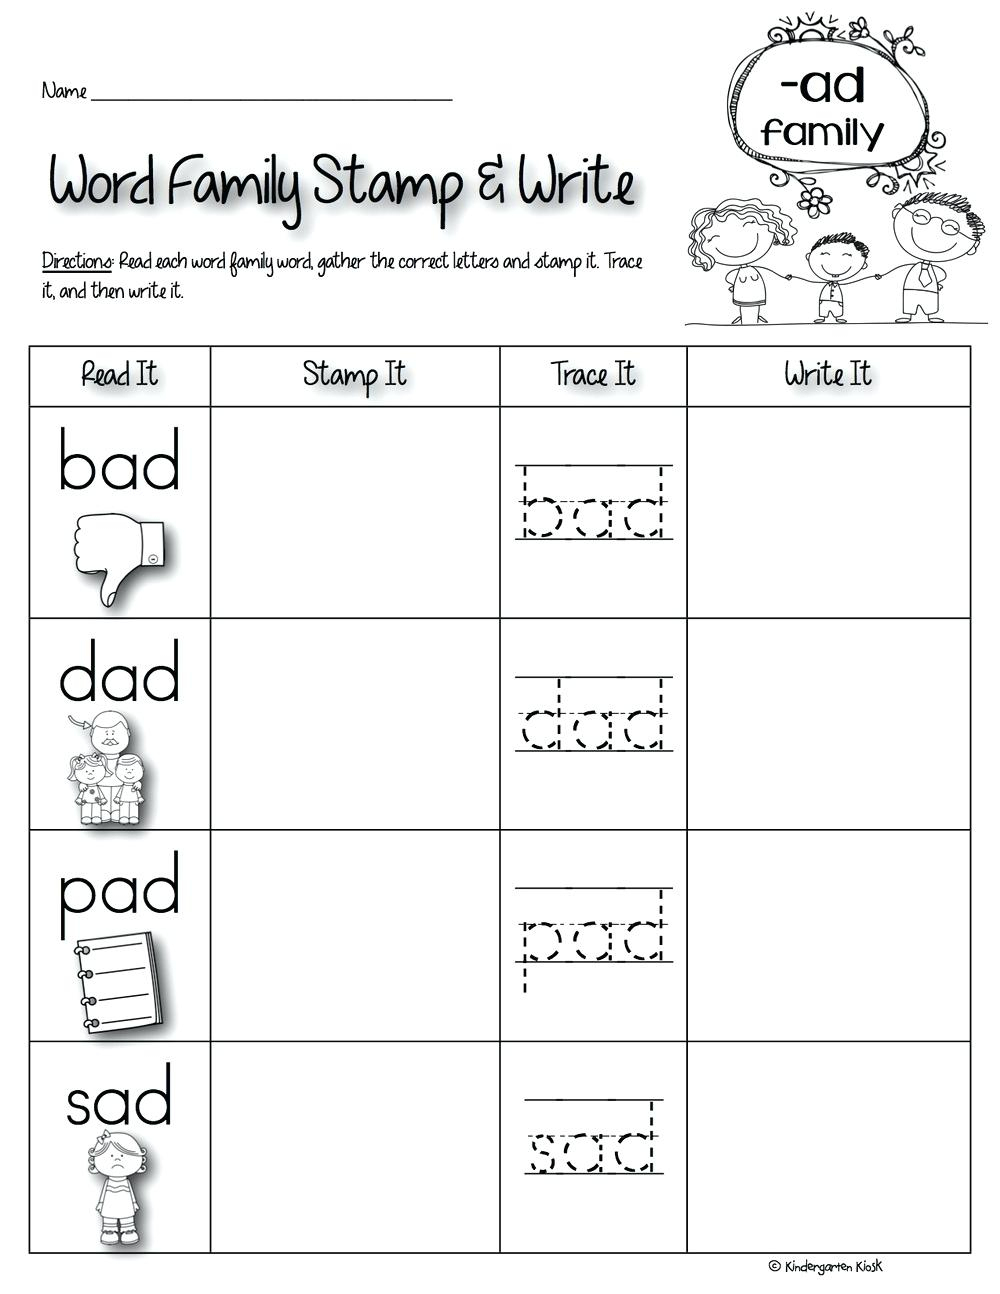 Ad Family Worksheets For Family Theme Preschool And Family - Free | Free Printable Word Family Worksheets For Kindergarten